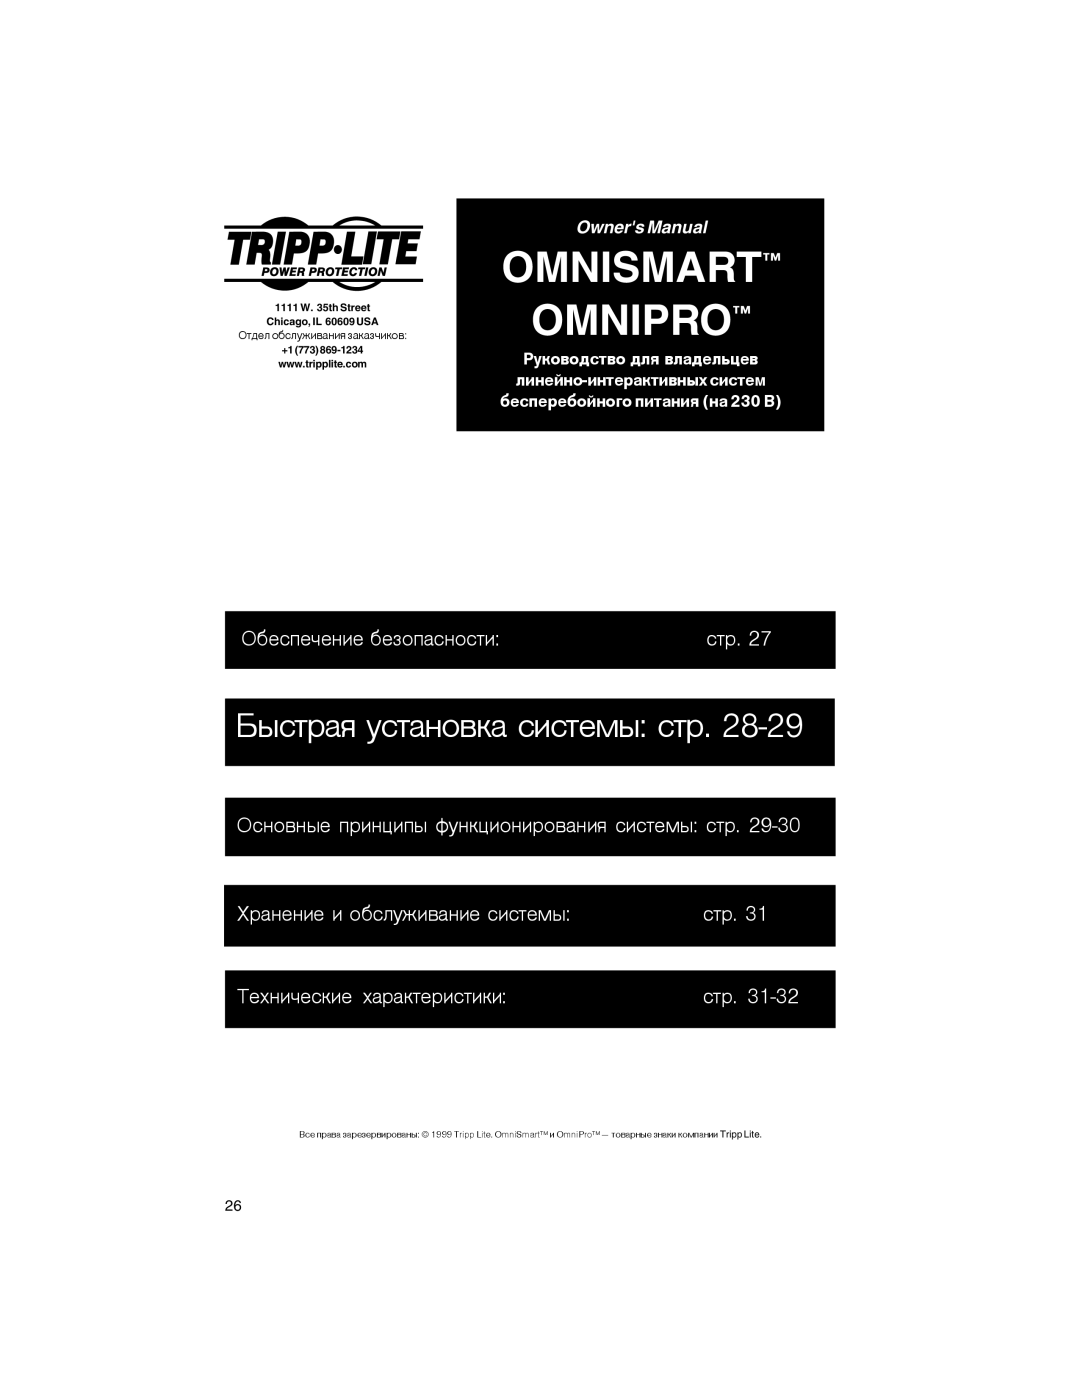 Tripp Lite OMNIPRO Omnismart Omnipro, žØÎÏÍ½ÜÐÎÏ½ÊË¿Ç½ÎÅÎÏÂÉØÎÏÍ, «¾ÂÎÌÂÔÂÊÅÂ¾ÂÄËÌ½ÎÊËÎÏÅÎÏÍ, Îïí  